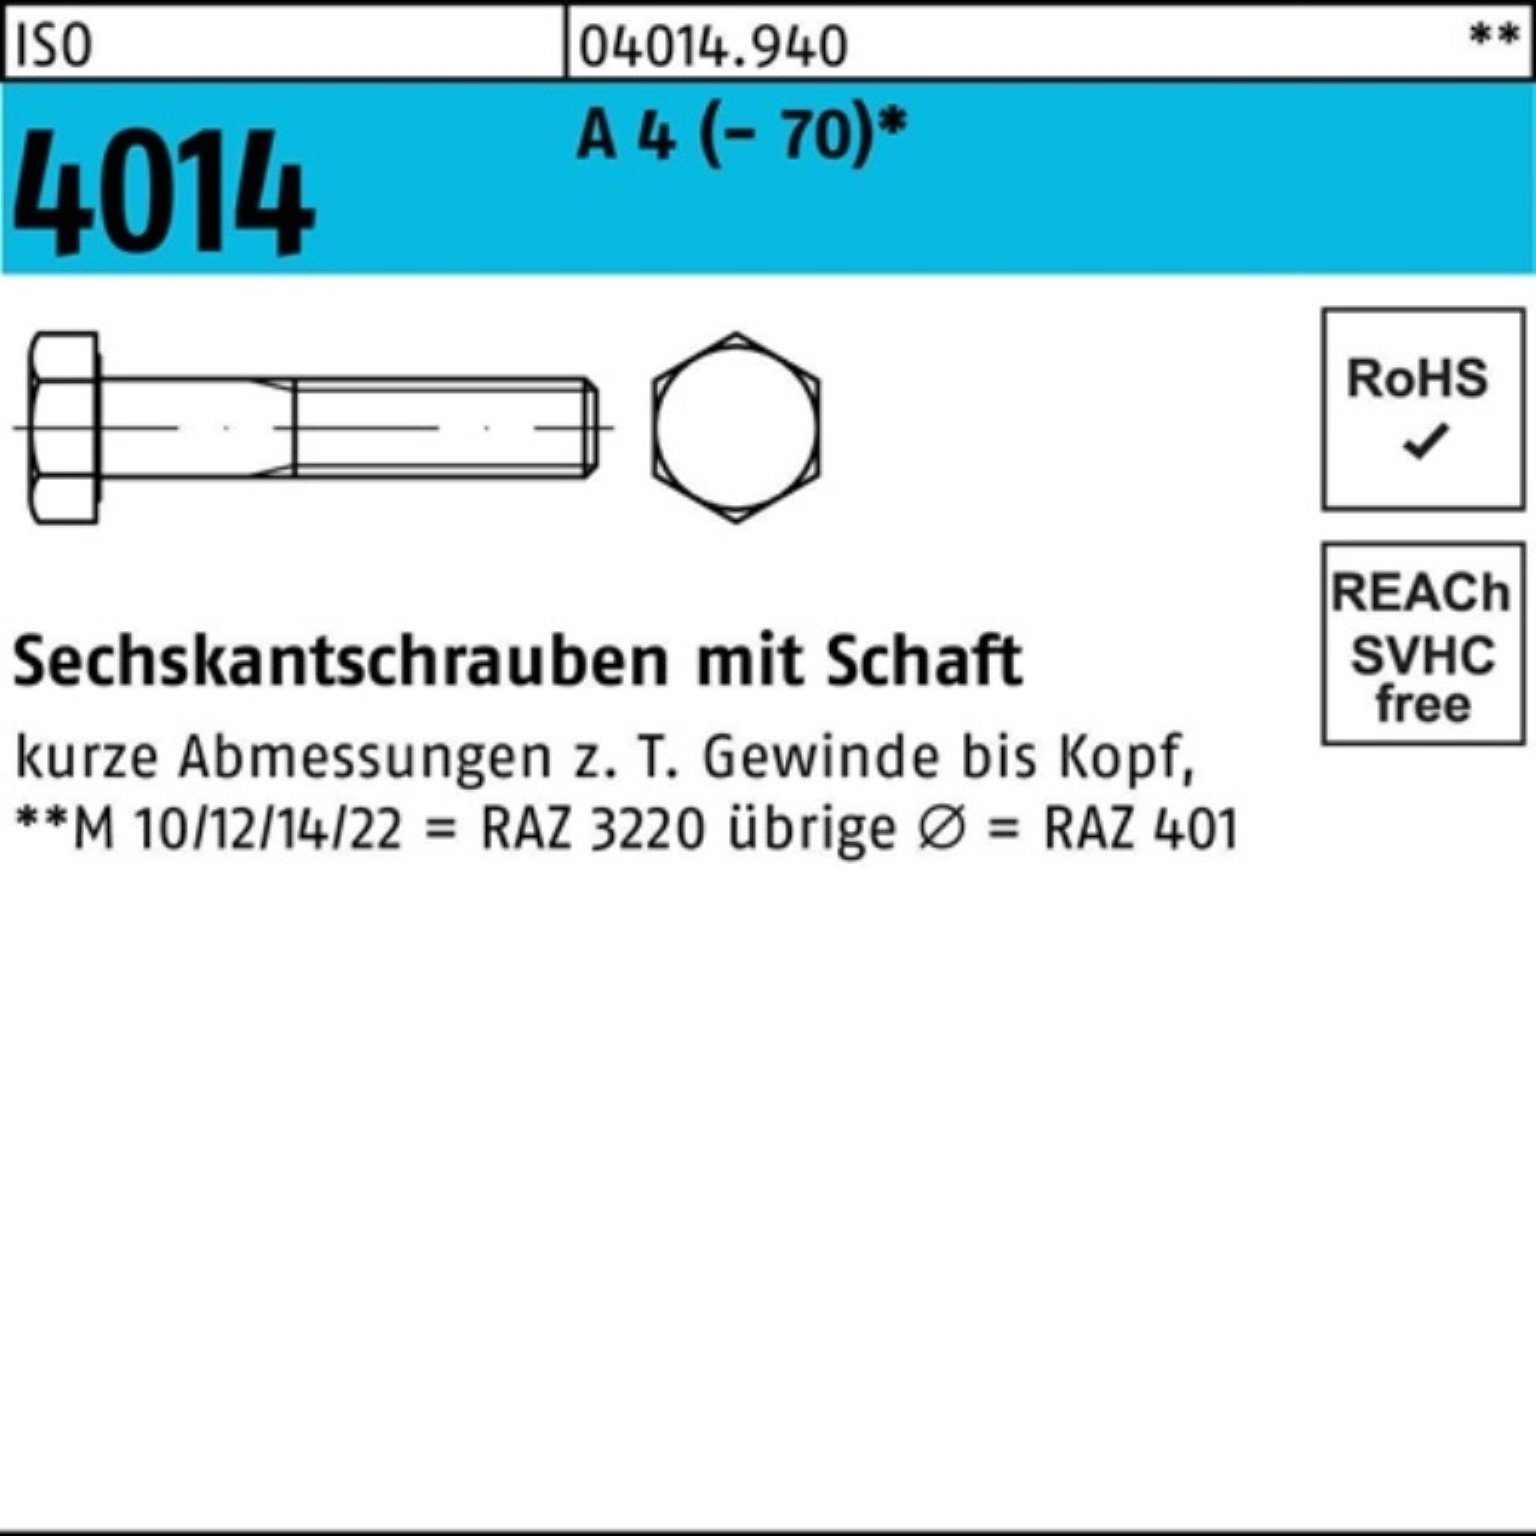 Bufab Sechskantschraube 100er Pack Sechskantschraube ISO 4014 Schaft M6x 80 A 4 (70) 100 St